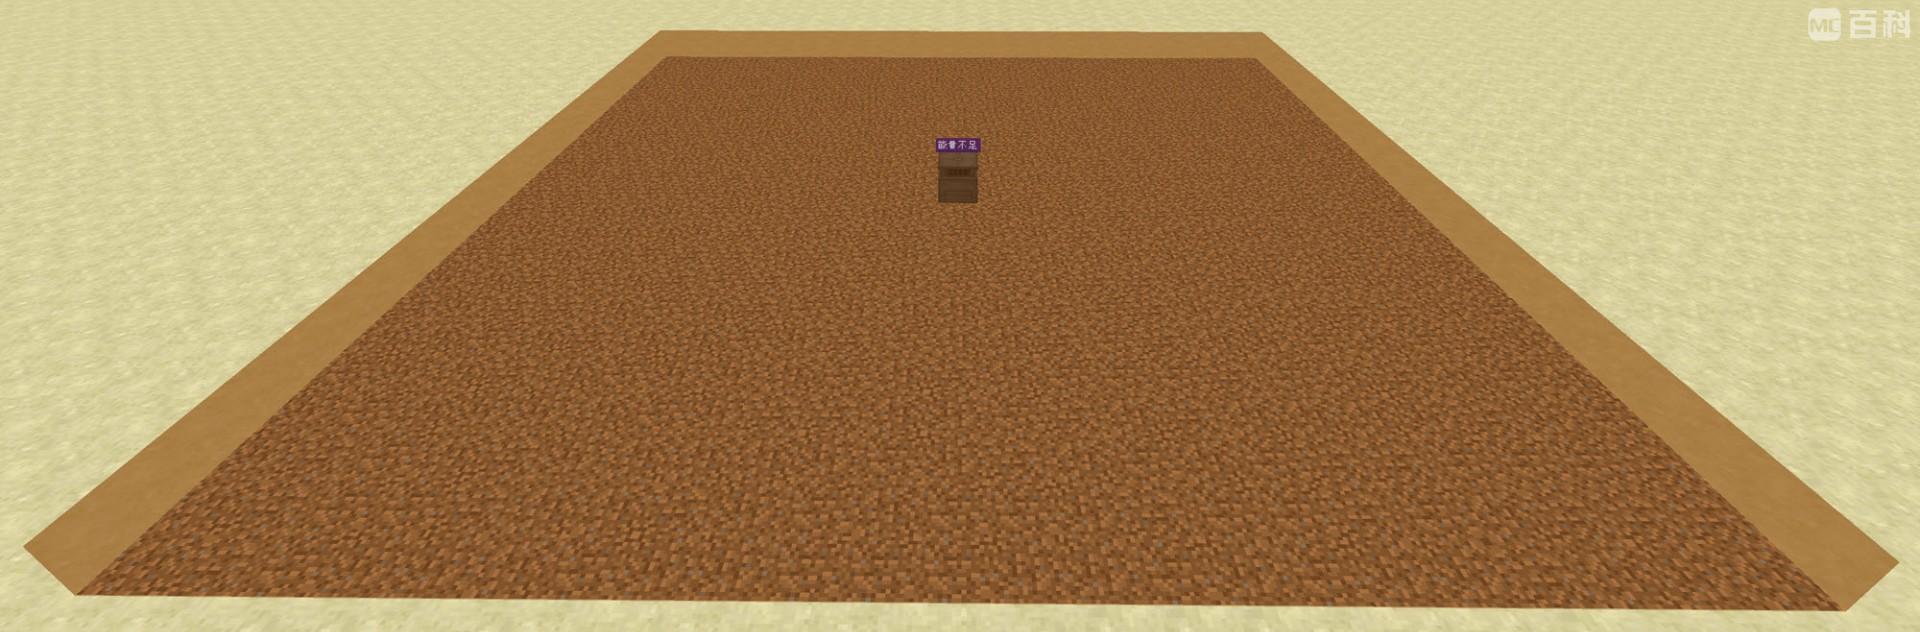 Minecraft 地毯复制机